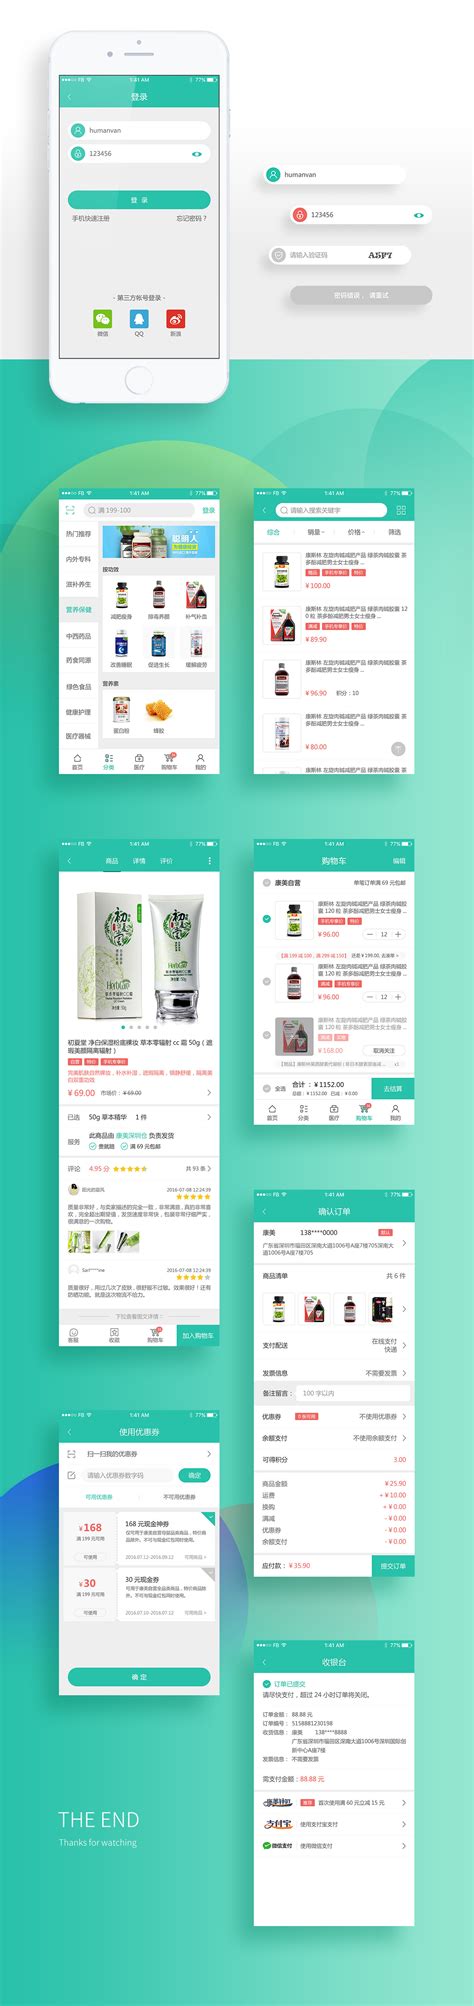 微商平台 购物 拼团 平台 app 推广